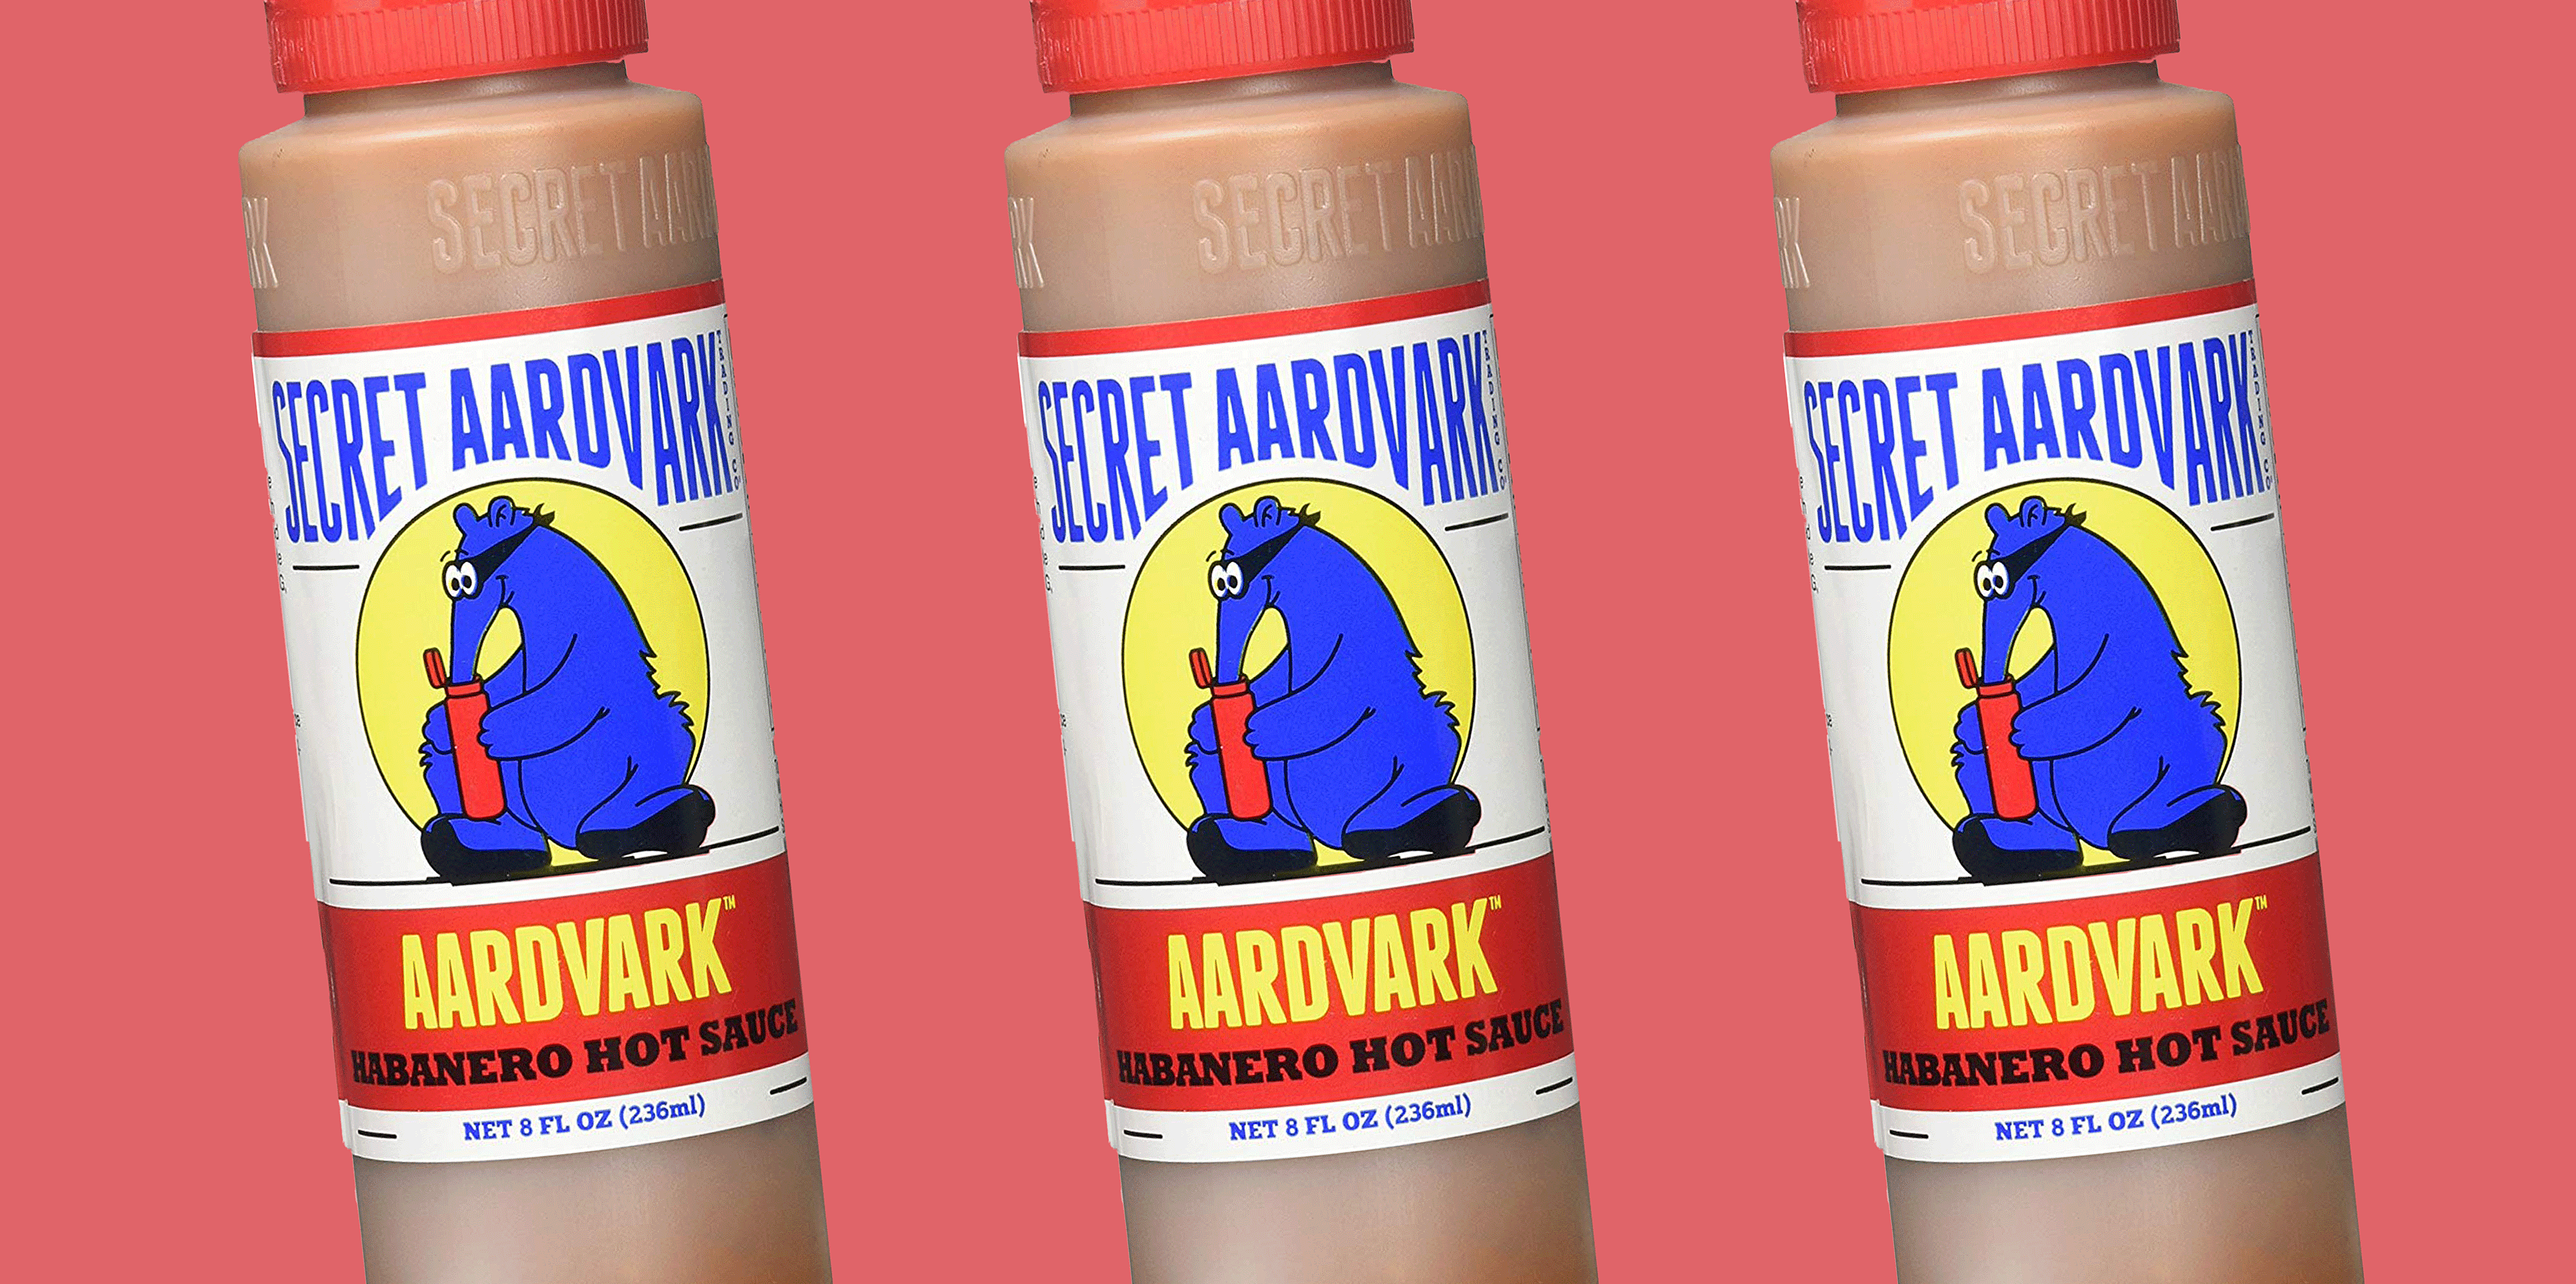 Pourquoi la sauce piquante est-elle si populaire? - Secret Aardvark